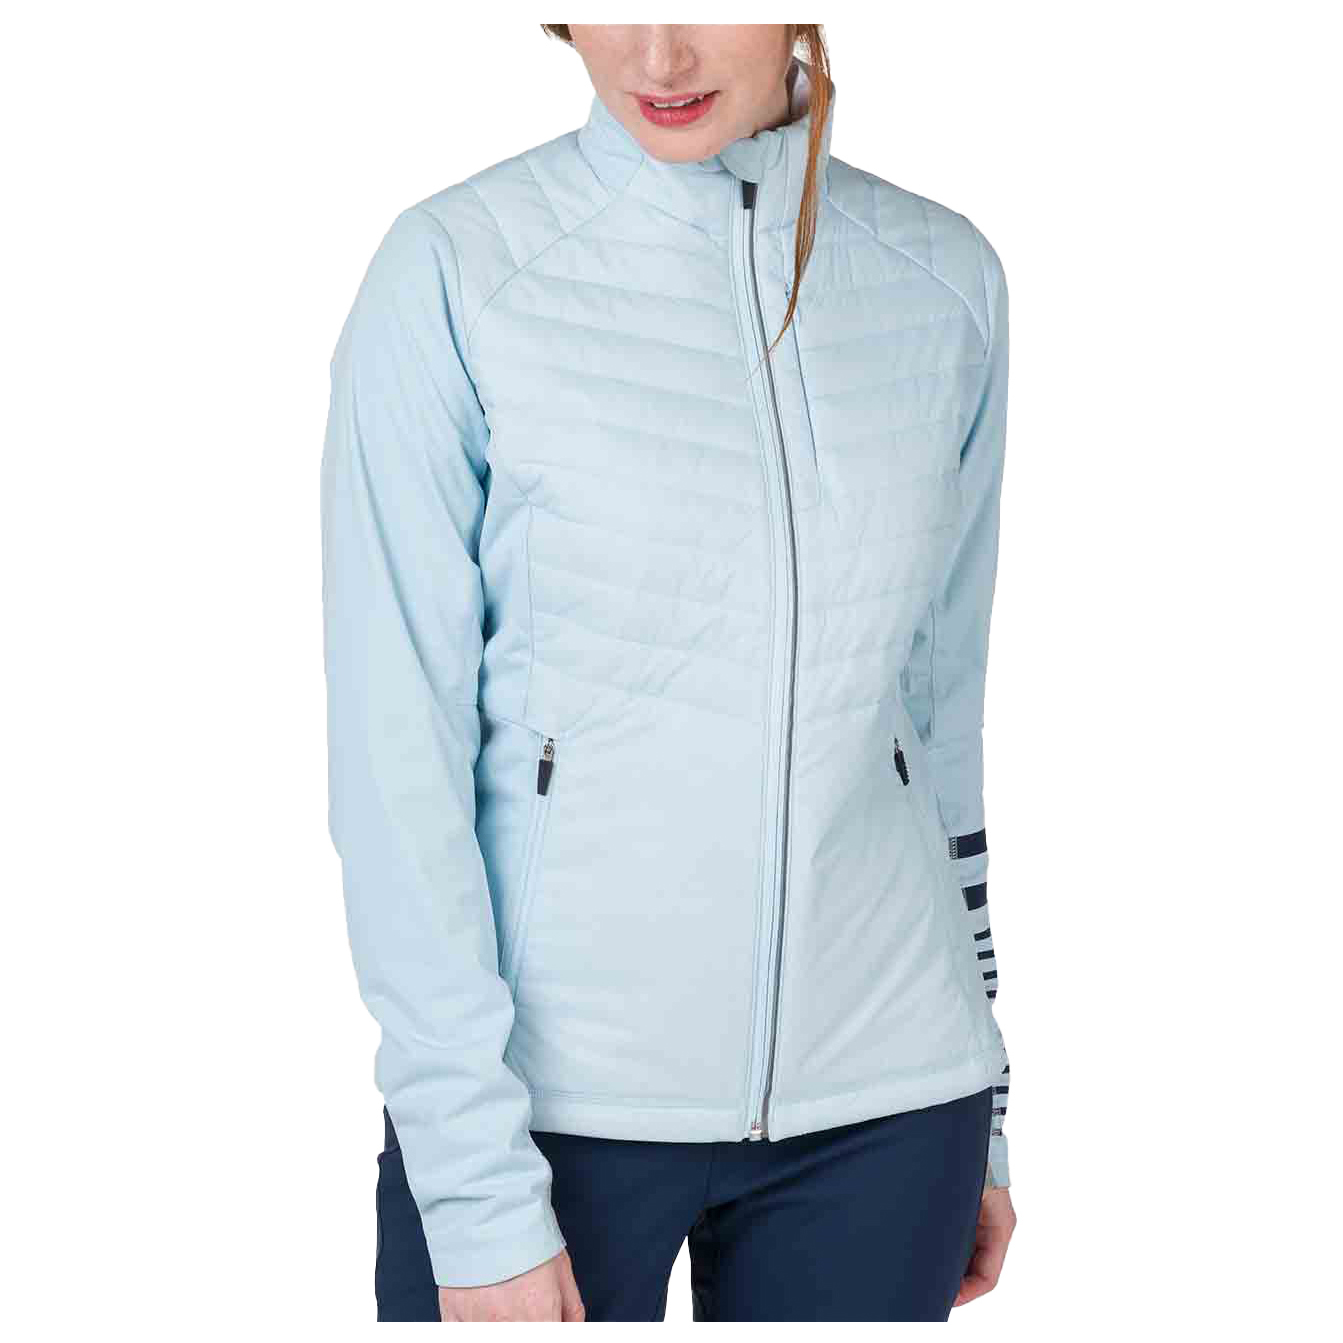 Куртка для беговых лыж Rossignol Women's Poursuite Warm, цвет Glacier